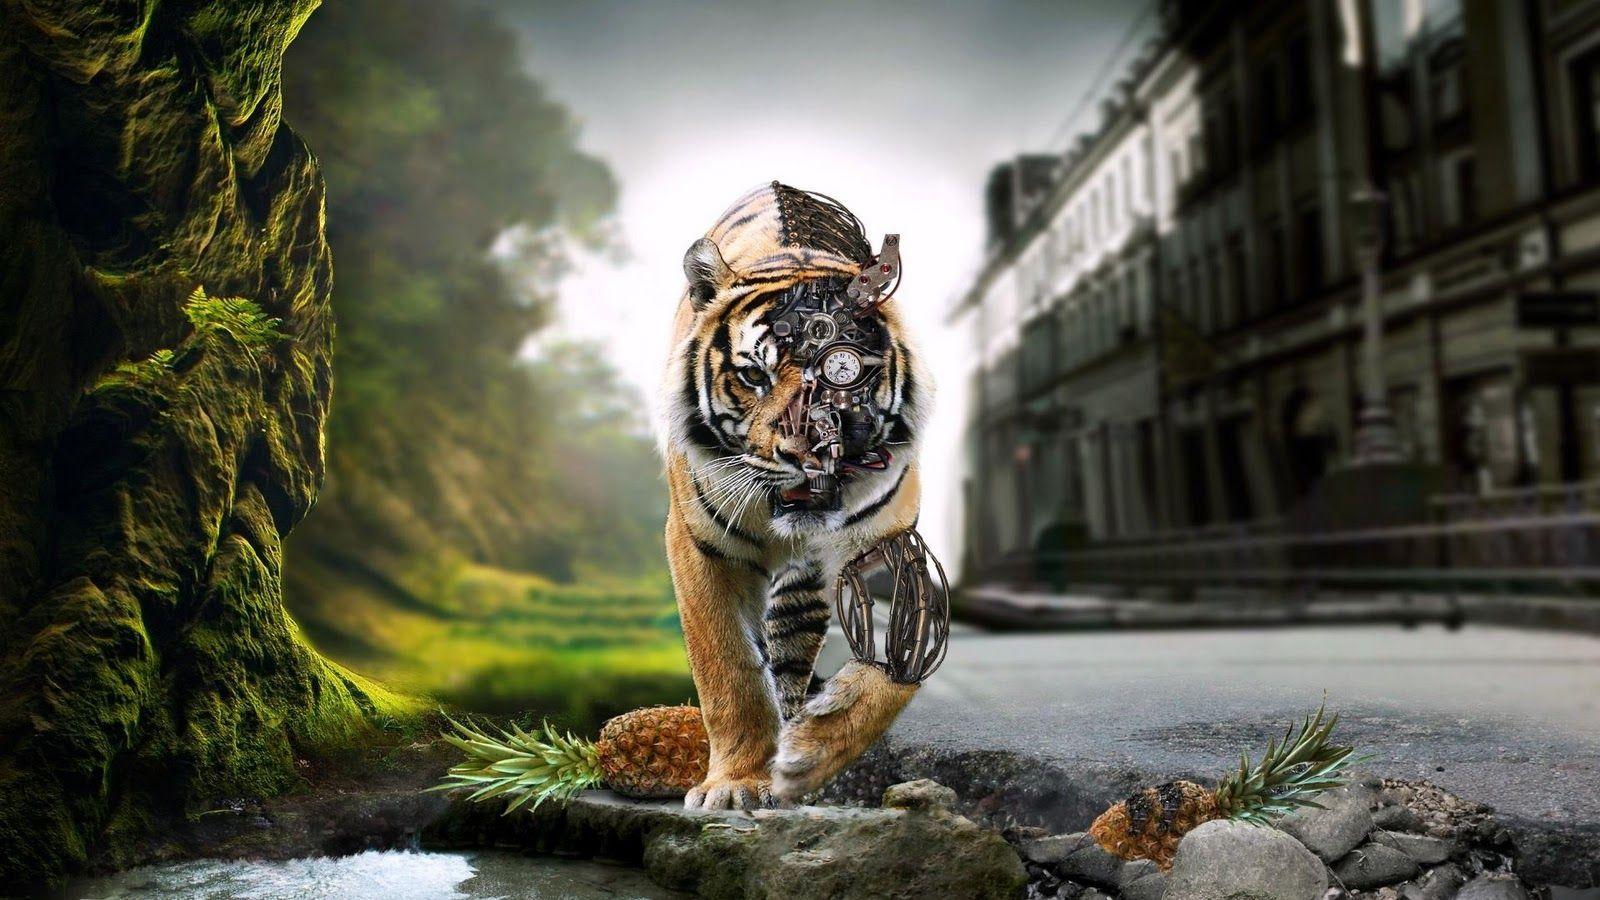 digital art tiger wallpaper high definition